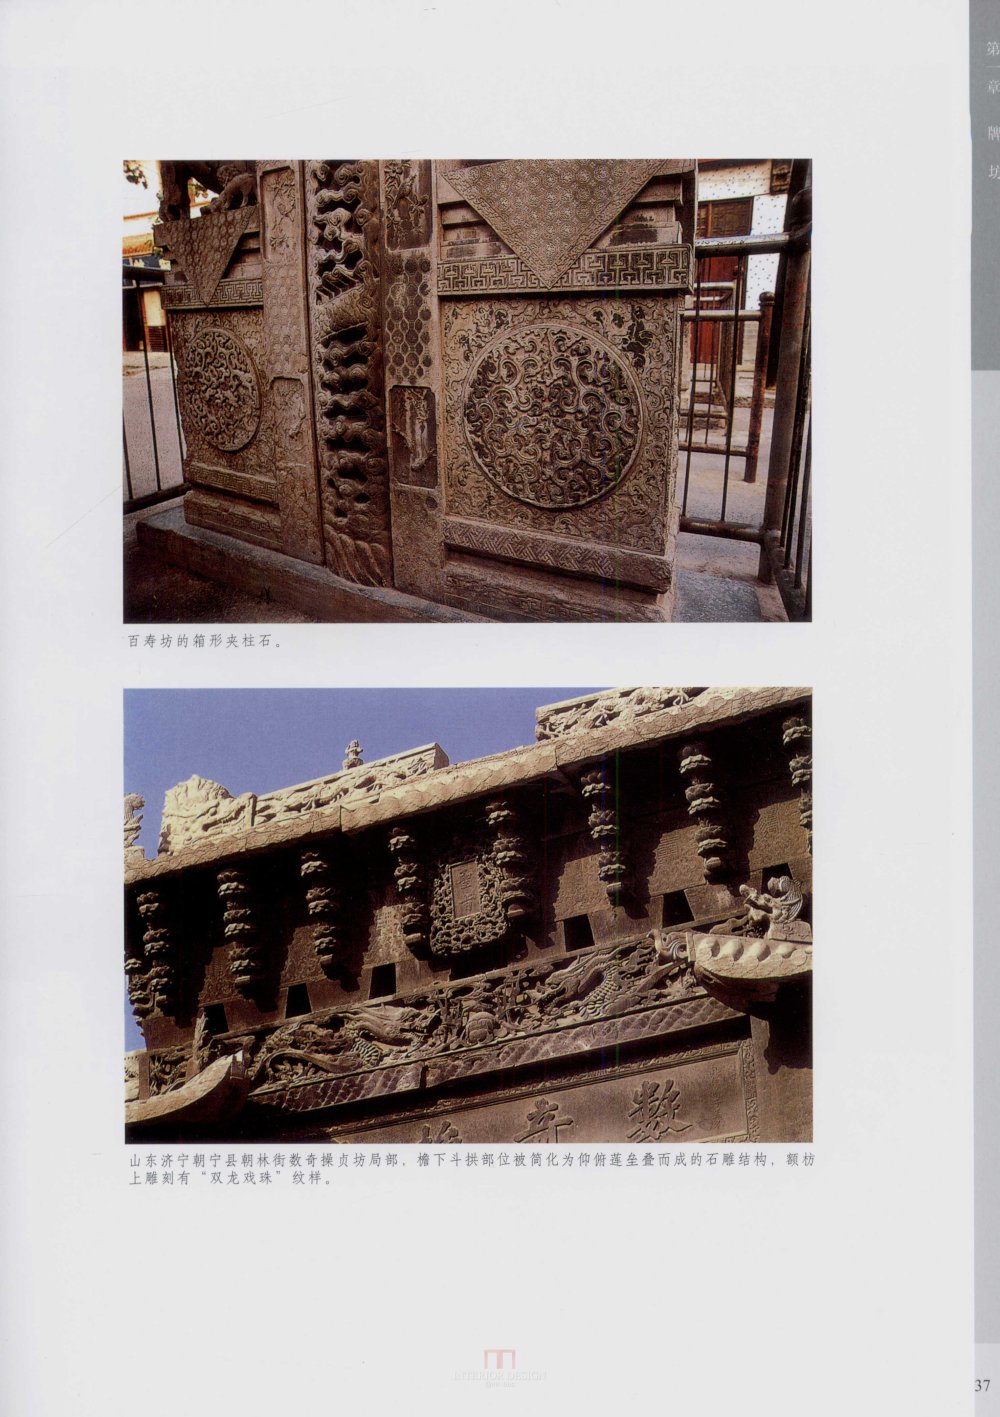 中国古代建筑 石雕_kobe 0045.jpg